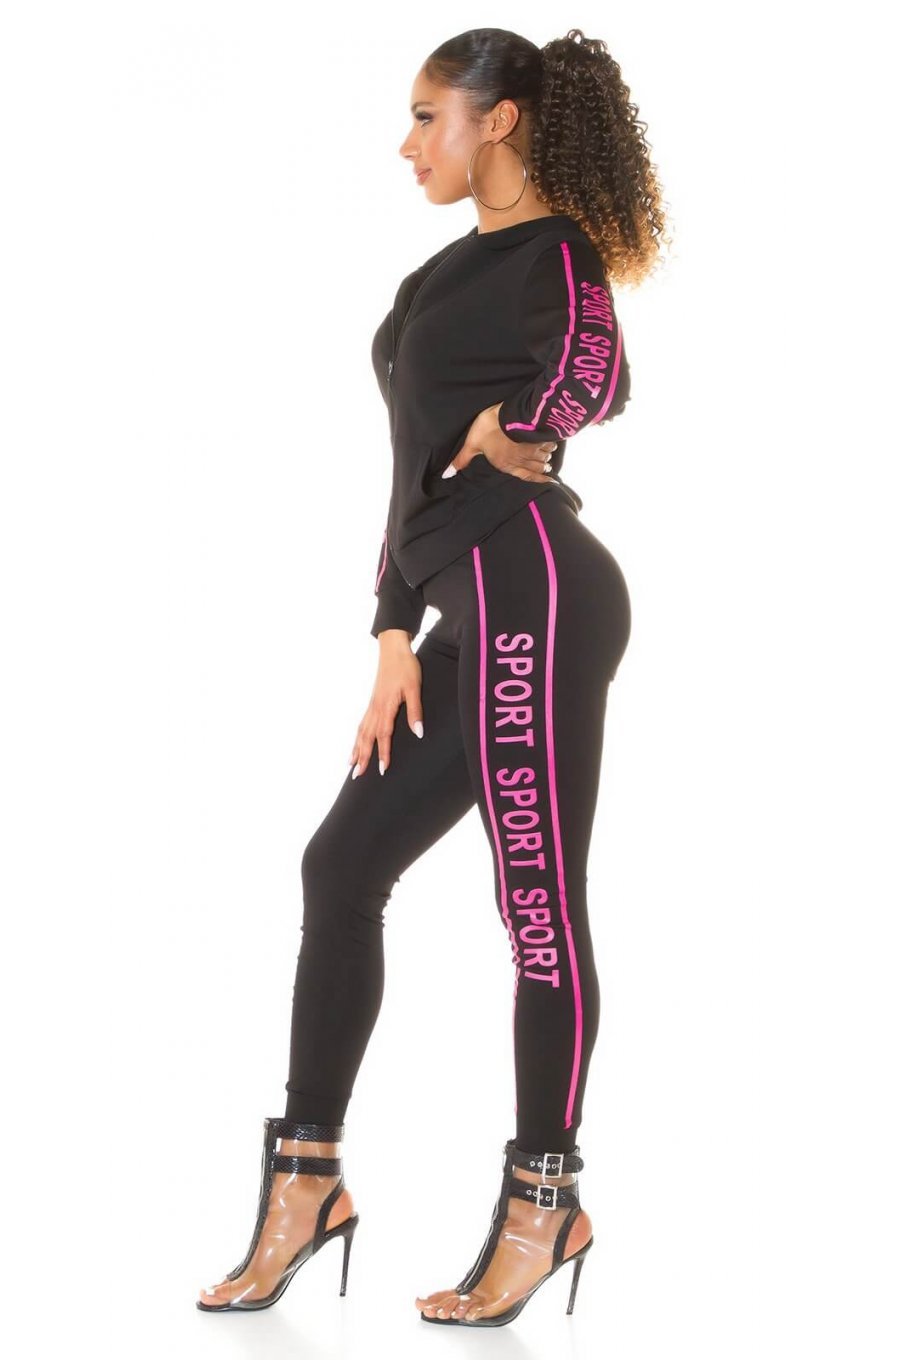 Trening dama sport, negru, cu imprimeu roz Marla 1 - jojofashion.ro